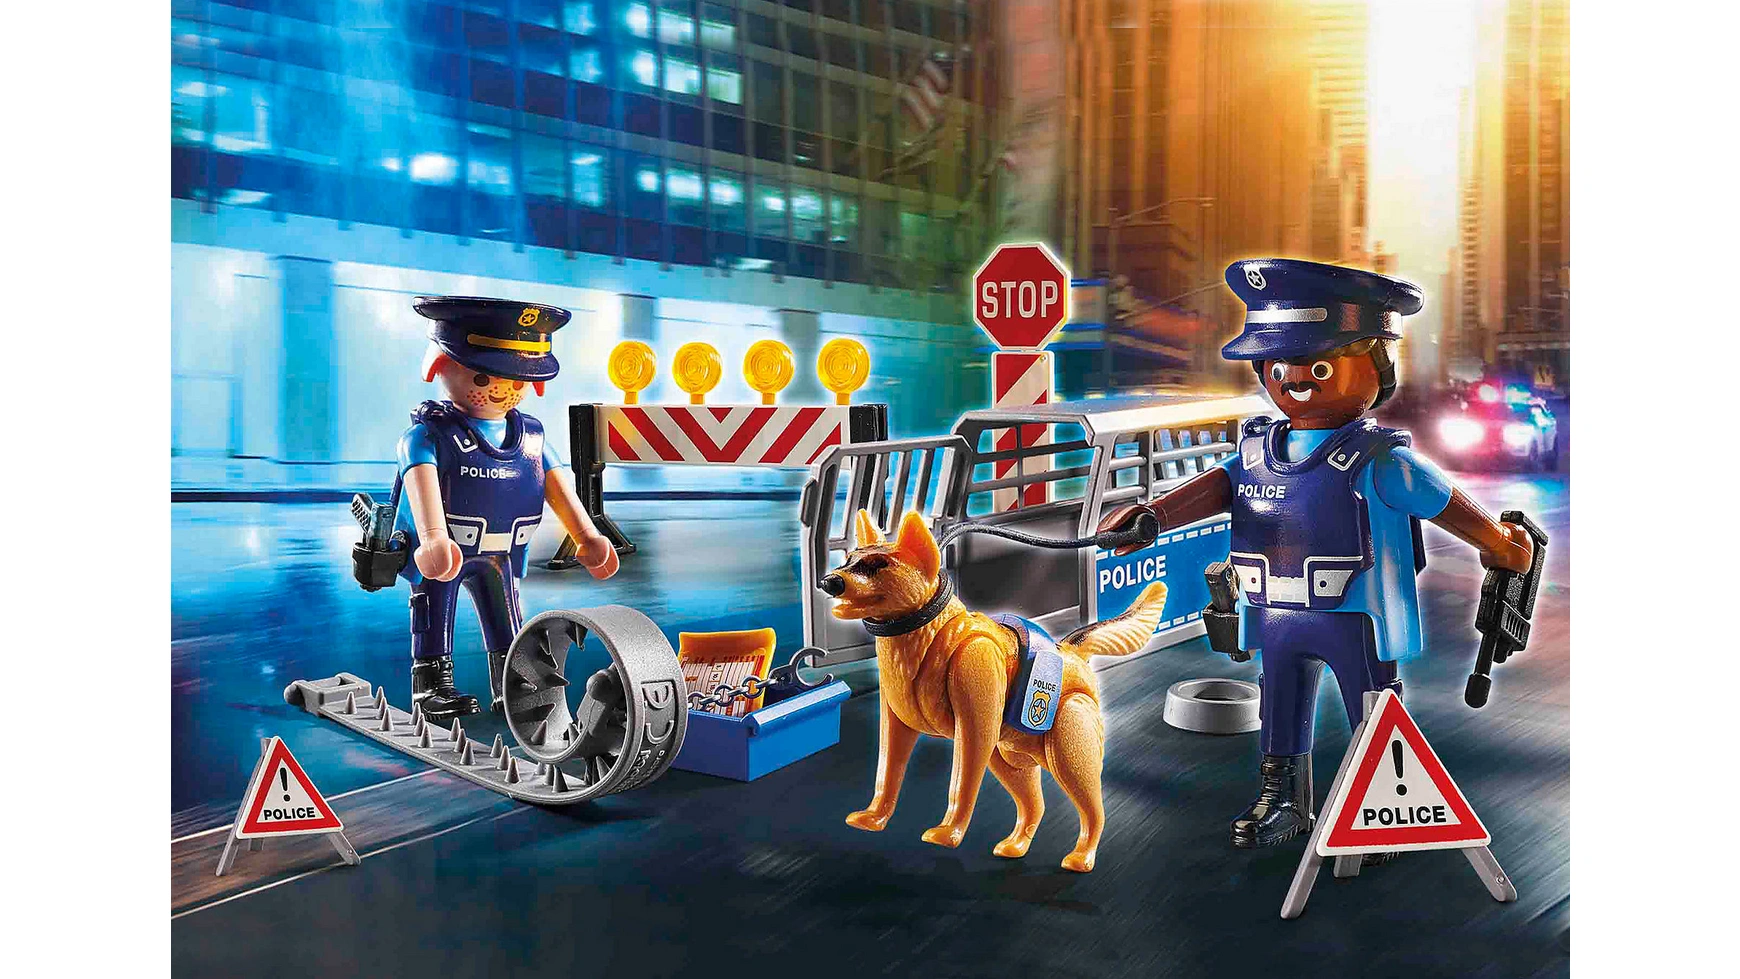 City action полицейский блокпост Playmobil набор с элементами конструктора playmobil city action 6924 блокпост на дороге 48 дет